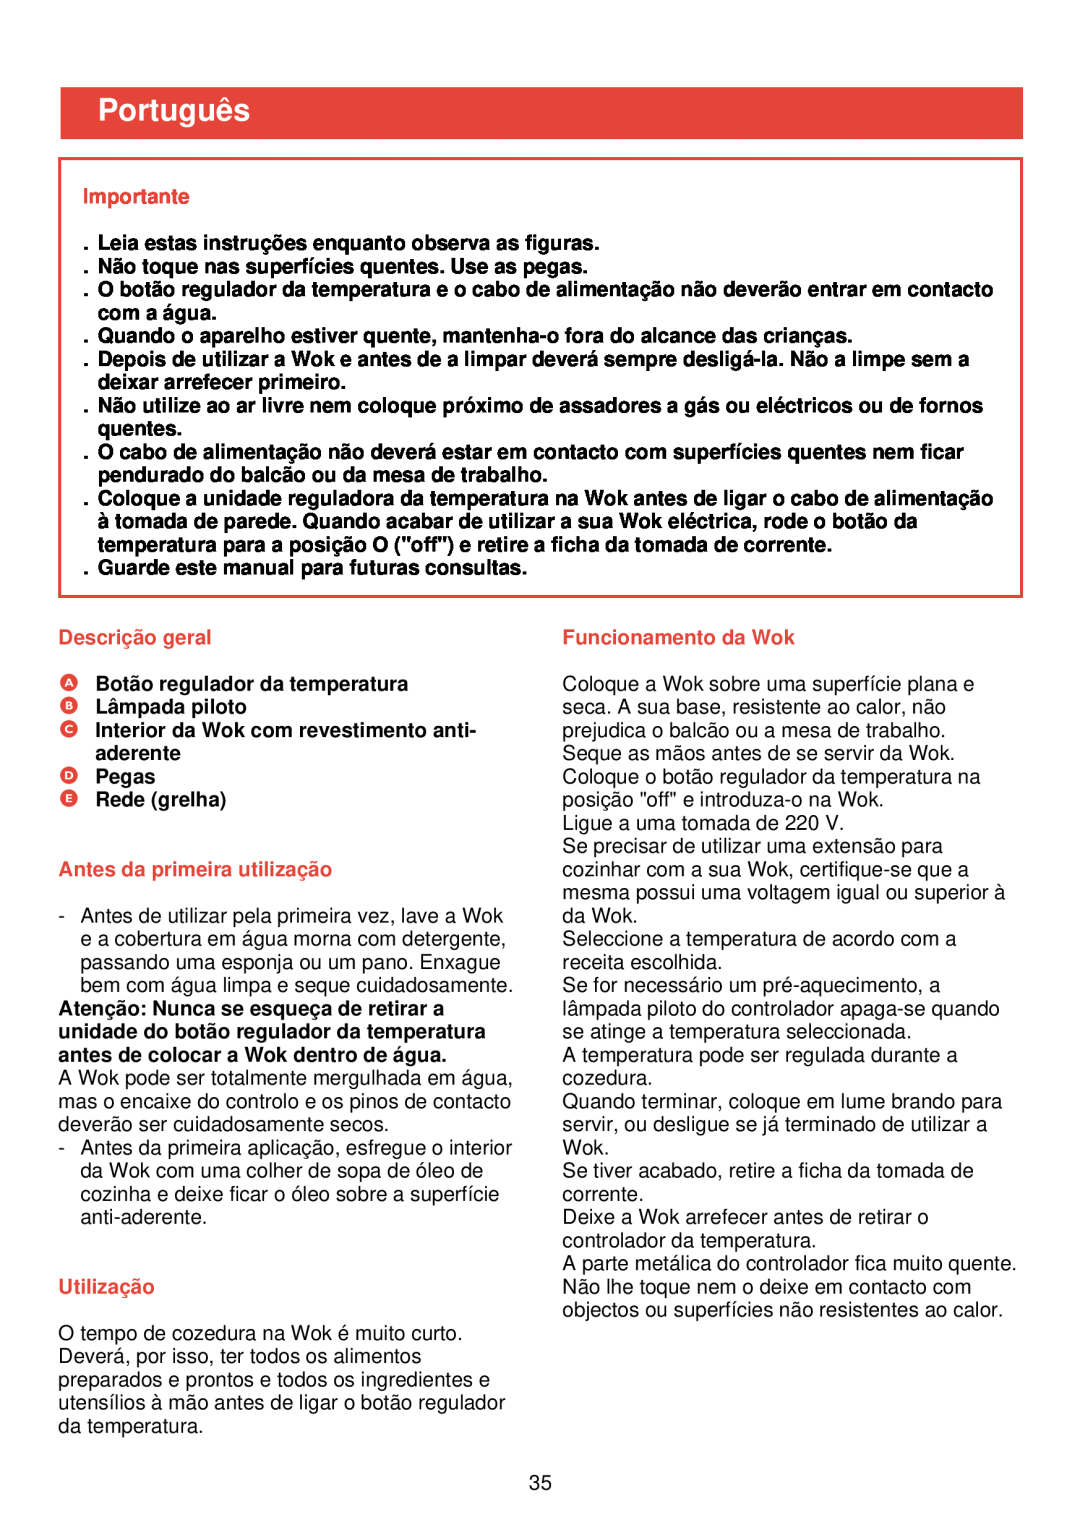 Philips HD 4335 Português, Descrição geral, Antes da primeira utilização, Utilização, Funcionamento da Wok, Importante 